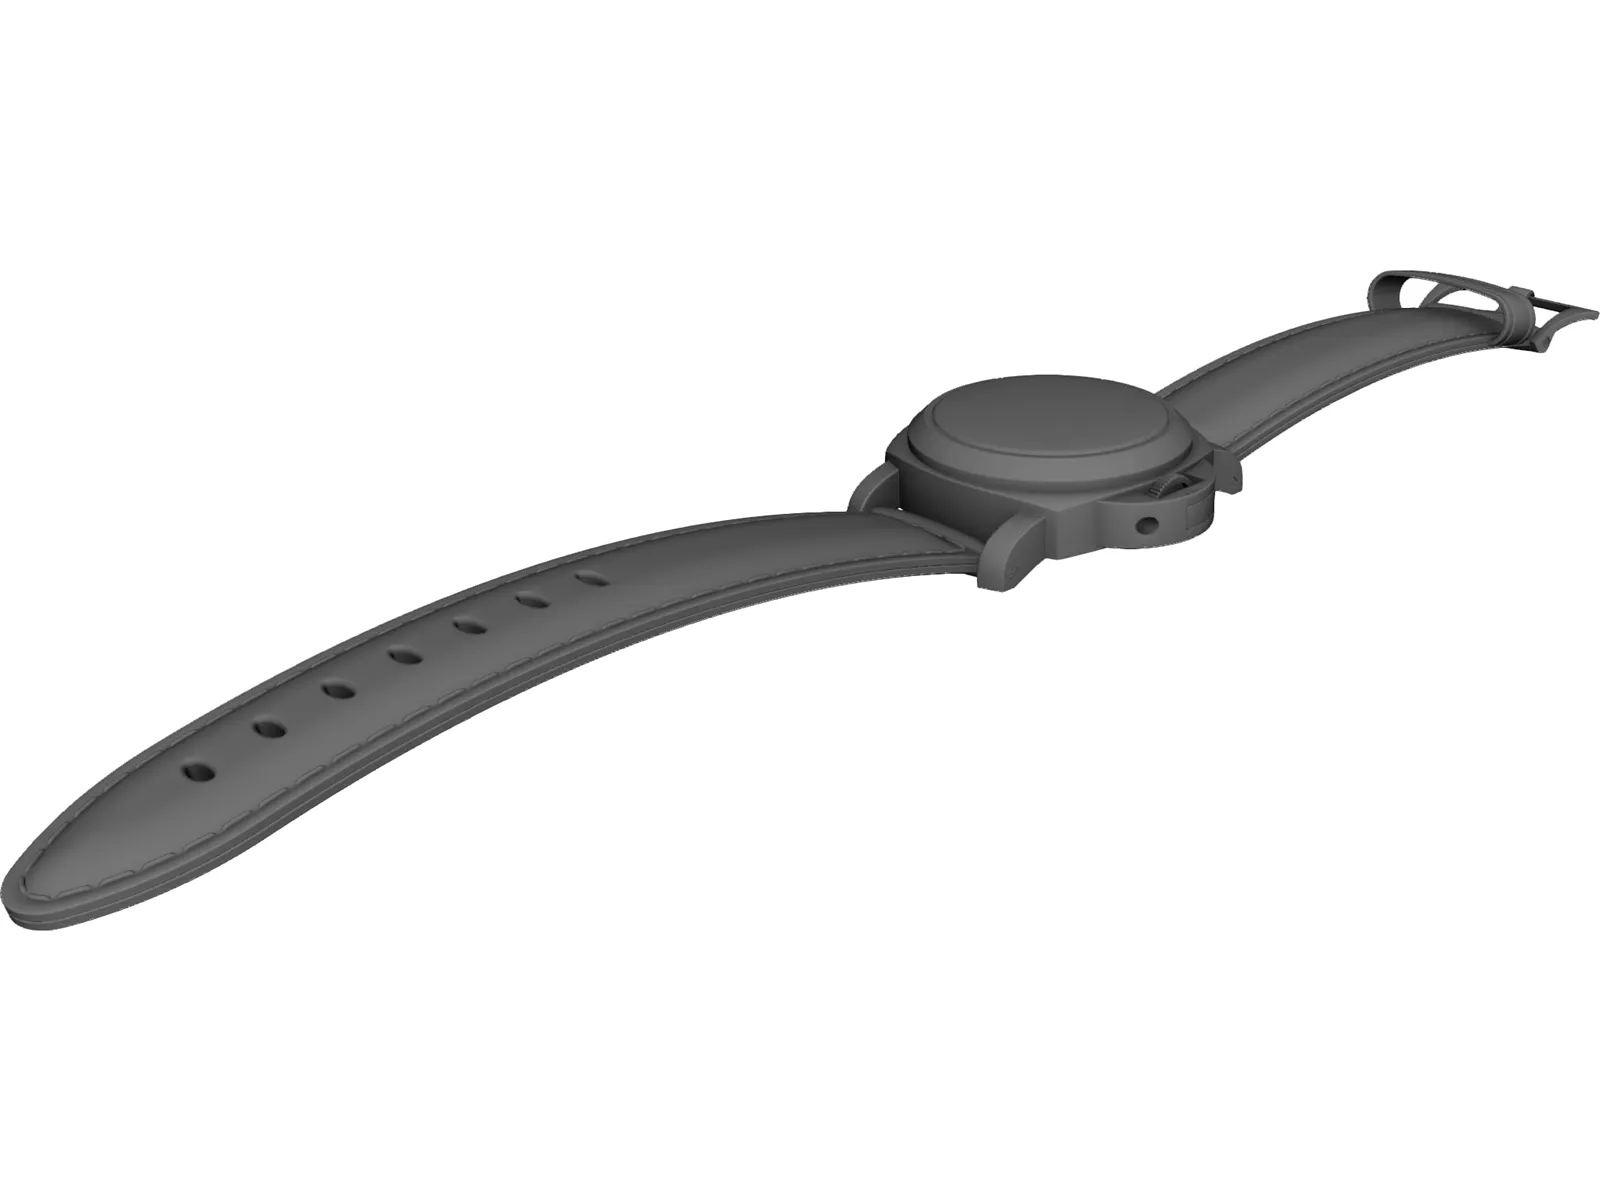 3D printable Hublot Watch Winder Cad Model 3D model | CGTrader